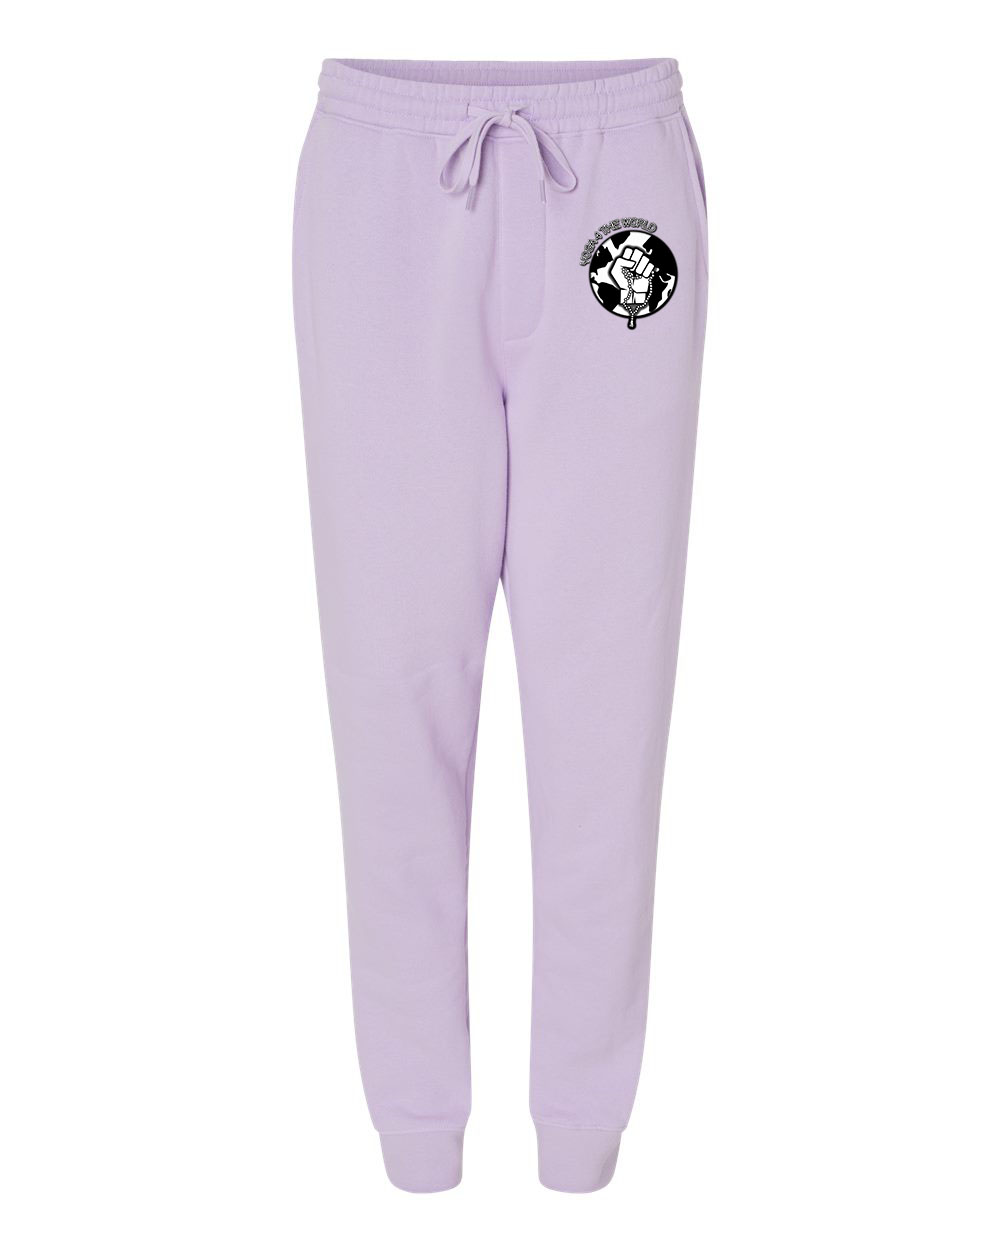 Yoga4TheWorld Lavender Fleece Pants